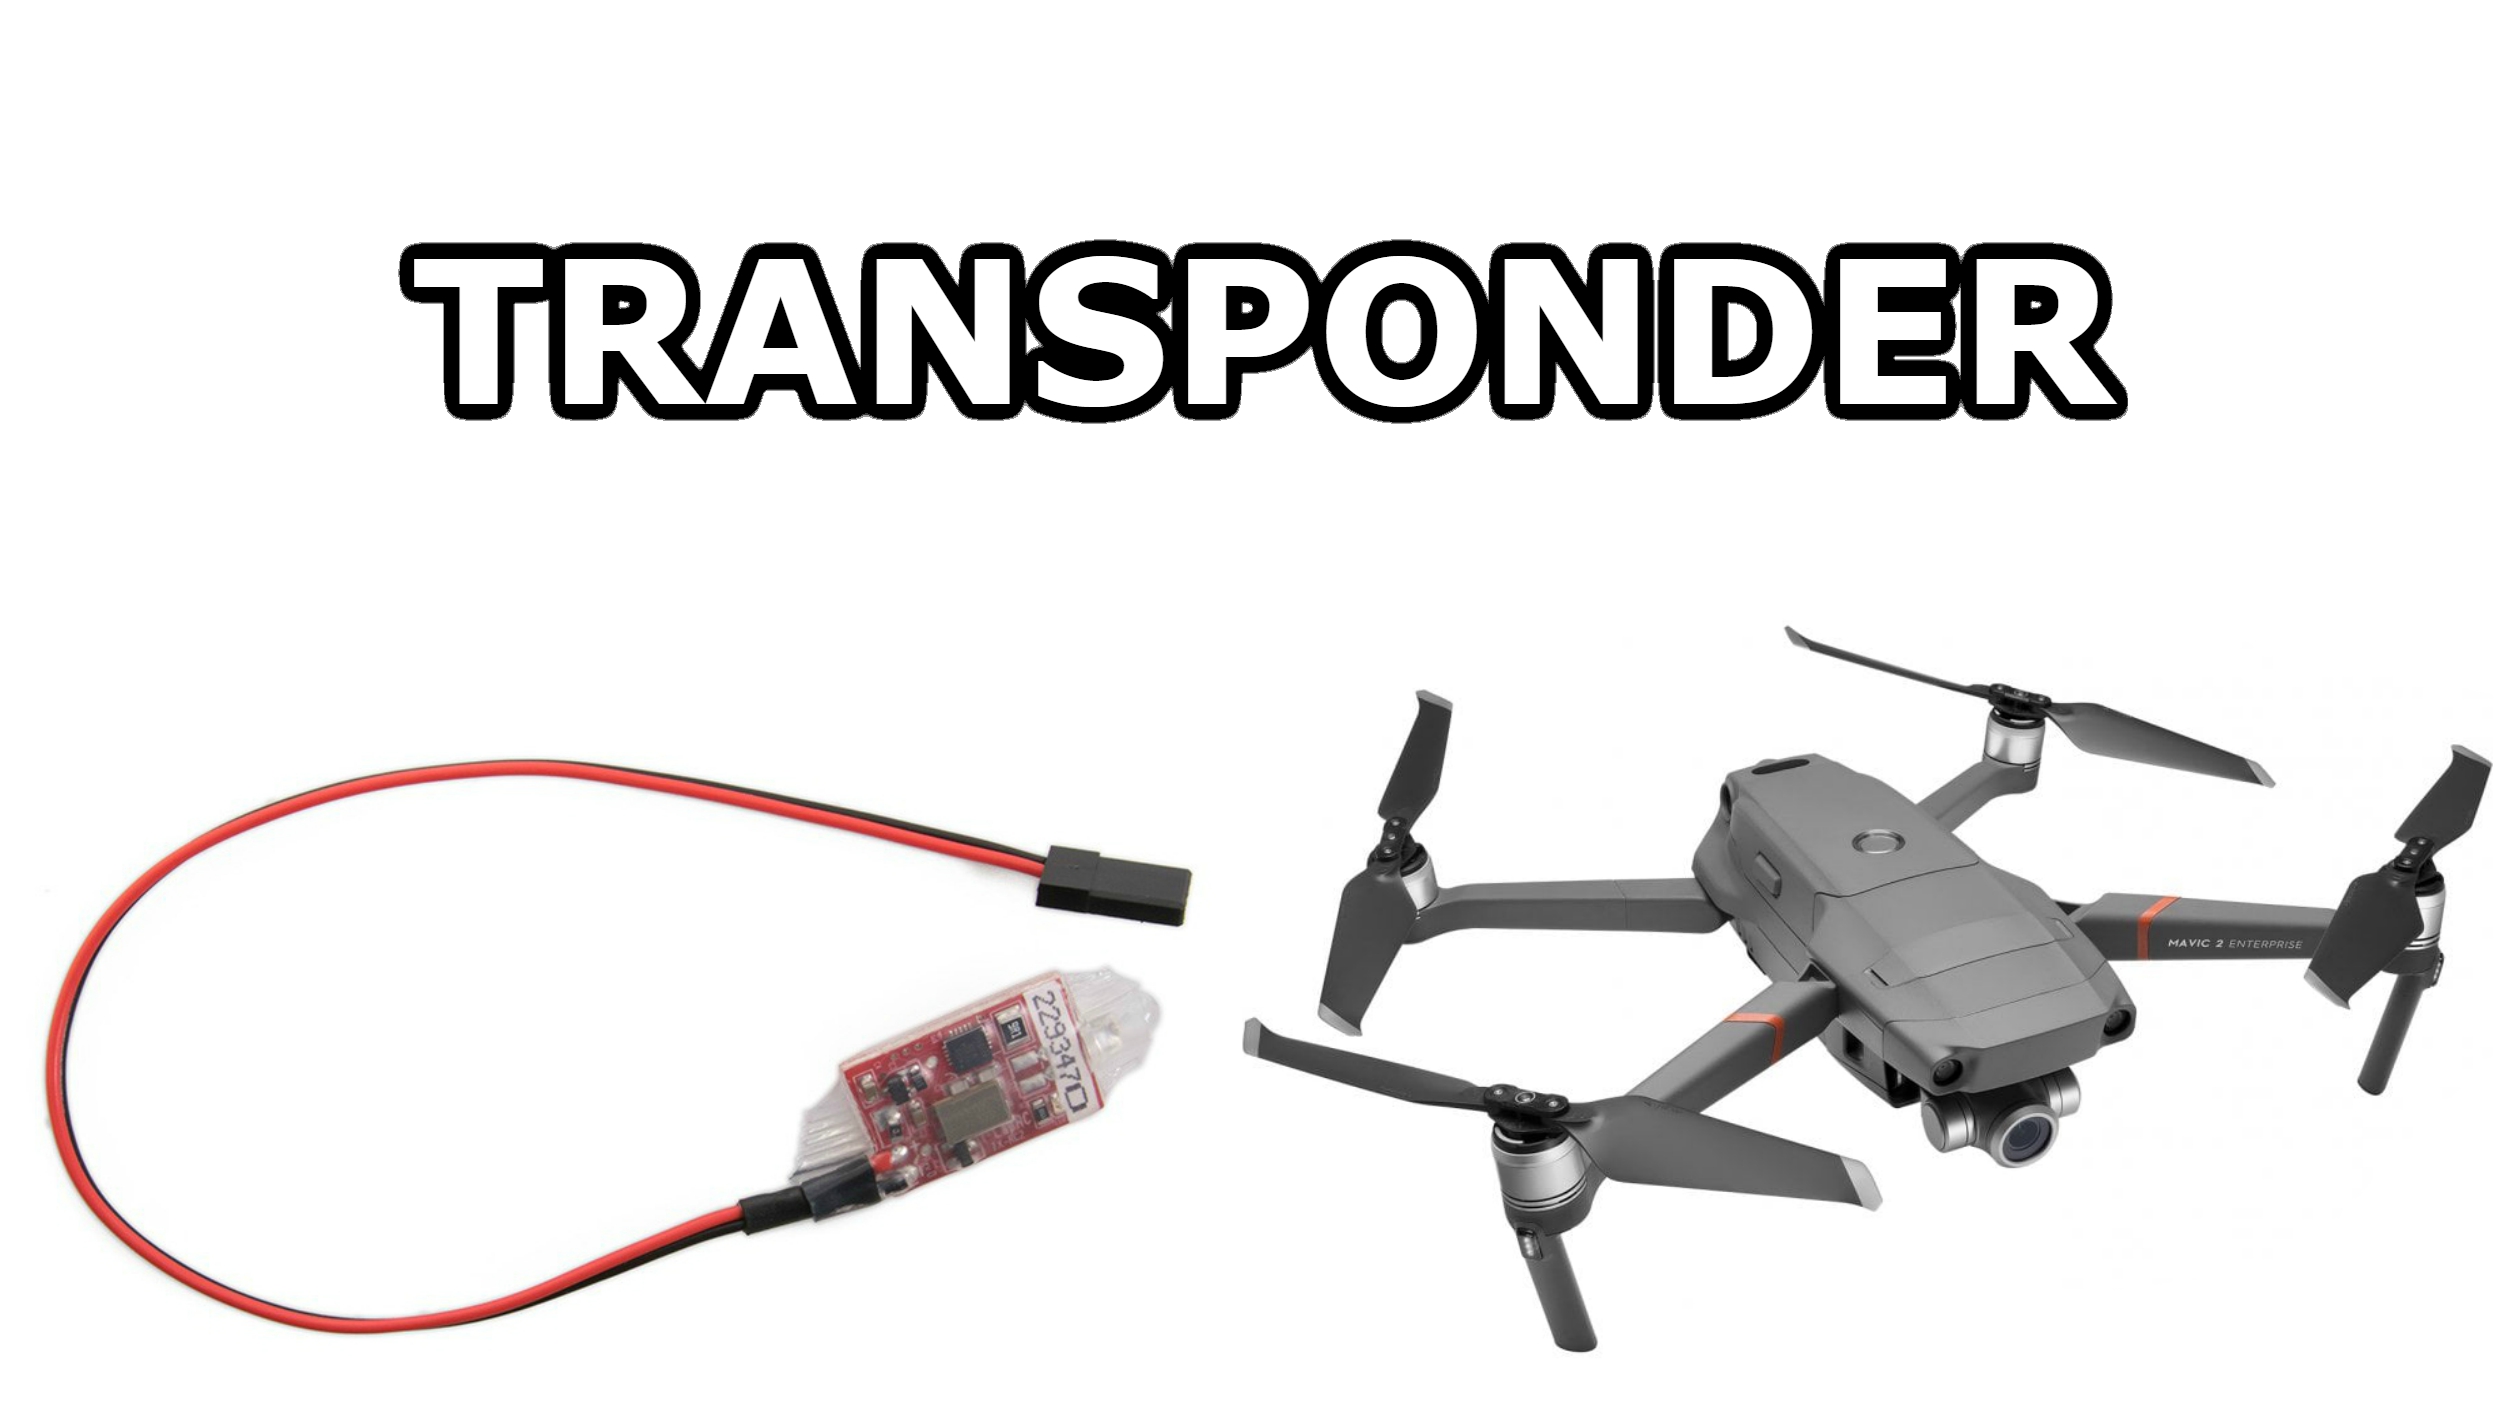 Cos’è il transponder? Ecco una semplice spiegazione